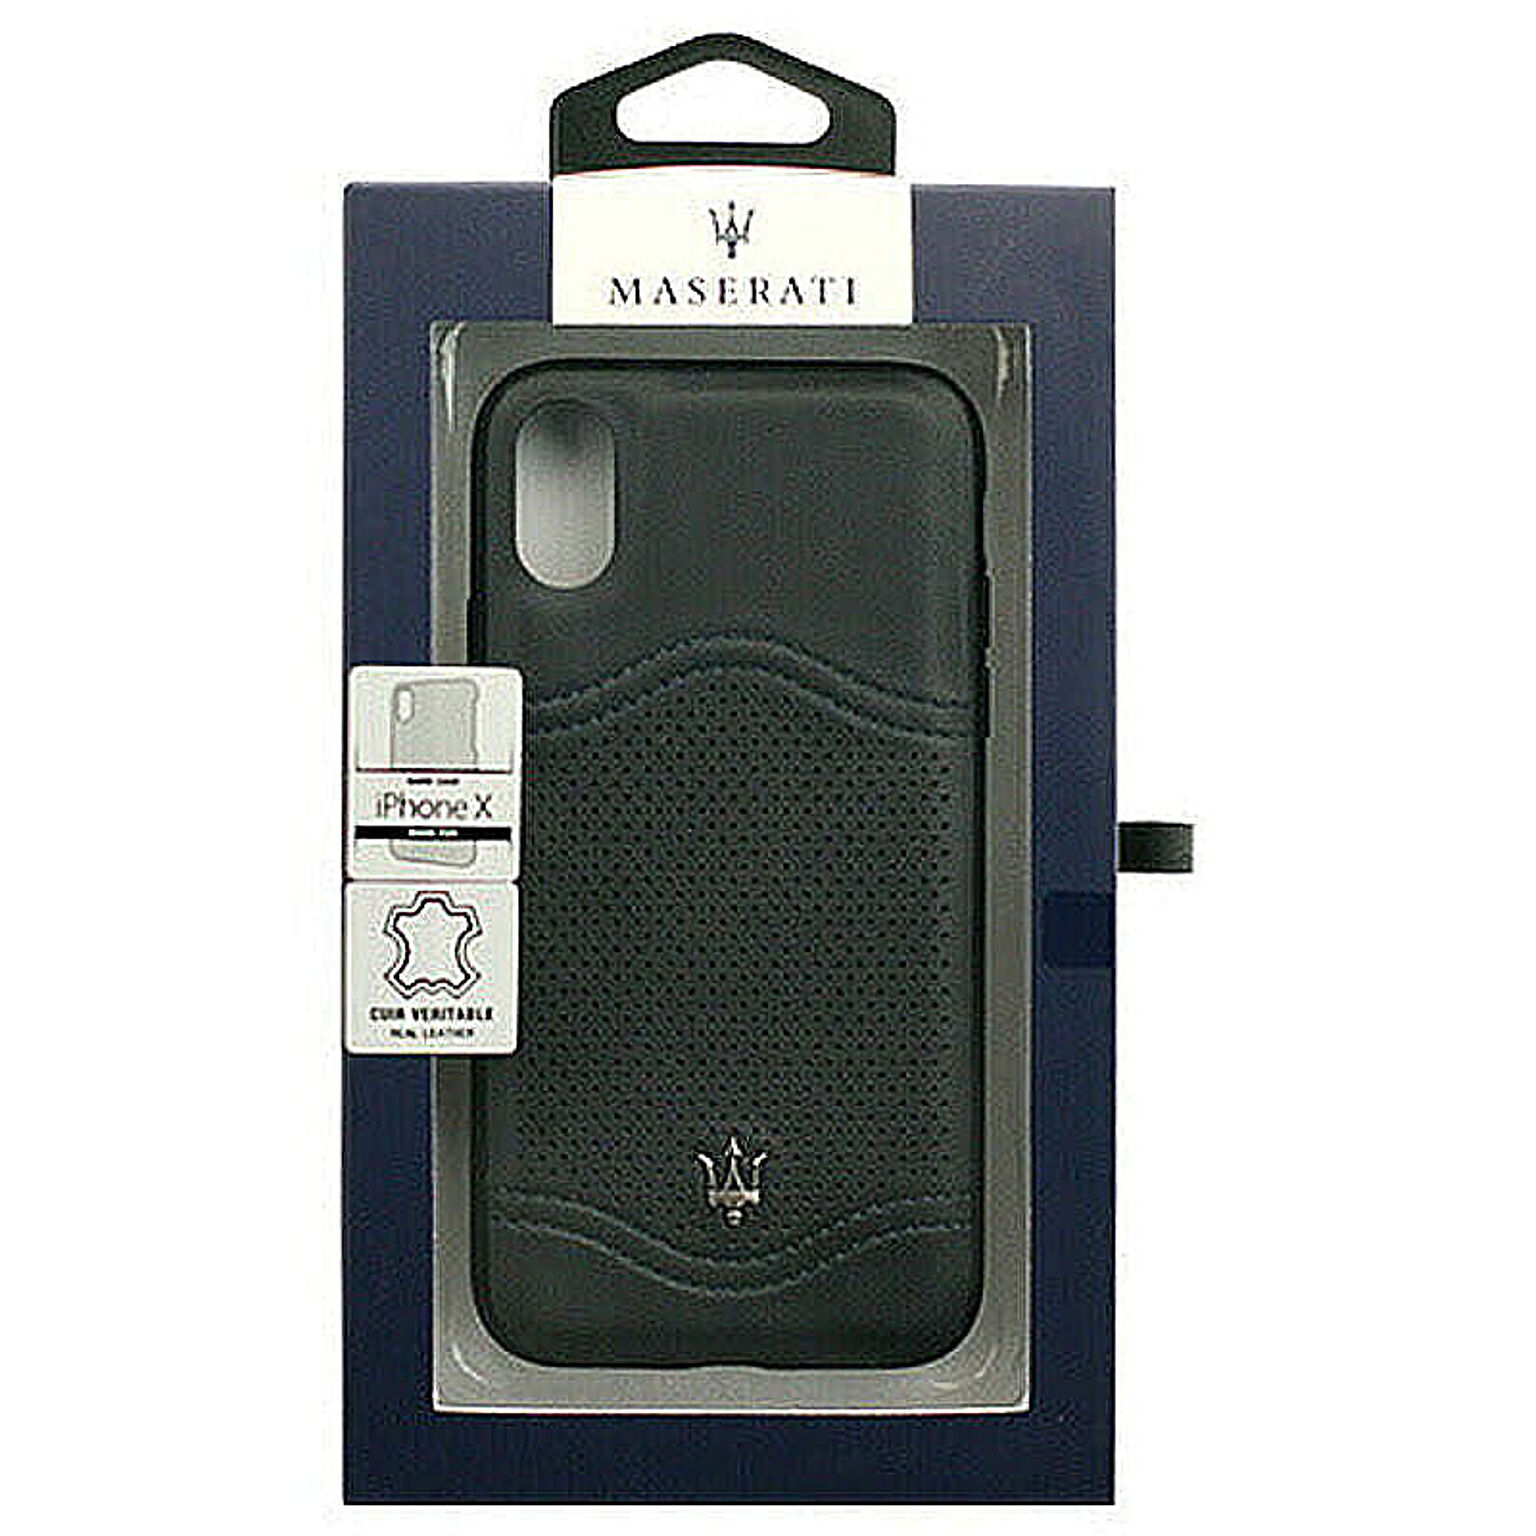 MASERATI 公式ライセンス品 iPhoneX専用 本革バックカバ MAGALHCPXNA 管理No. 4526397968502